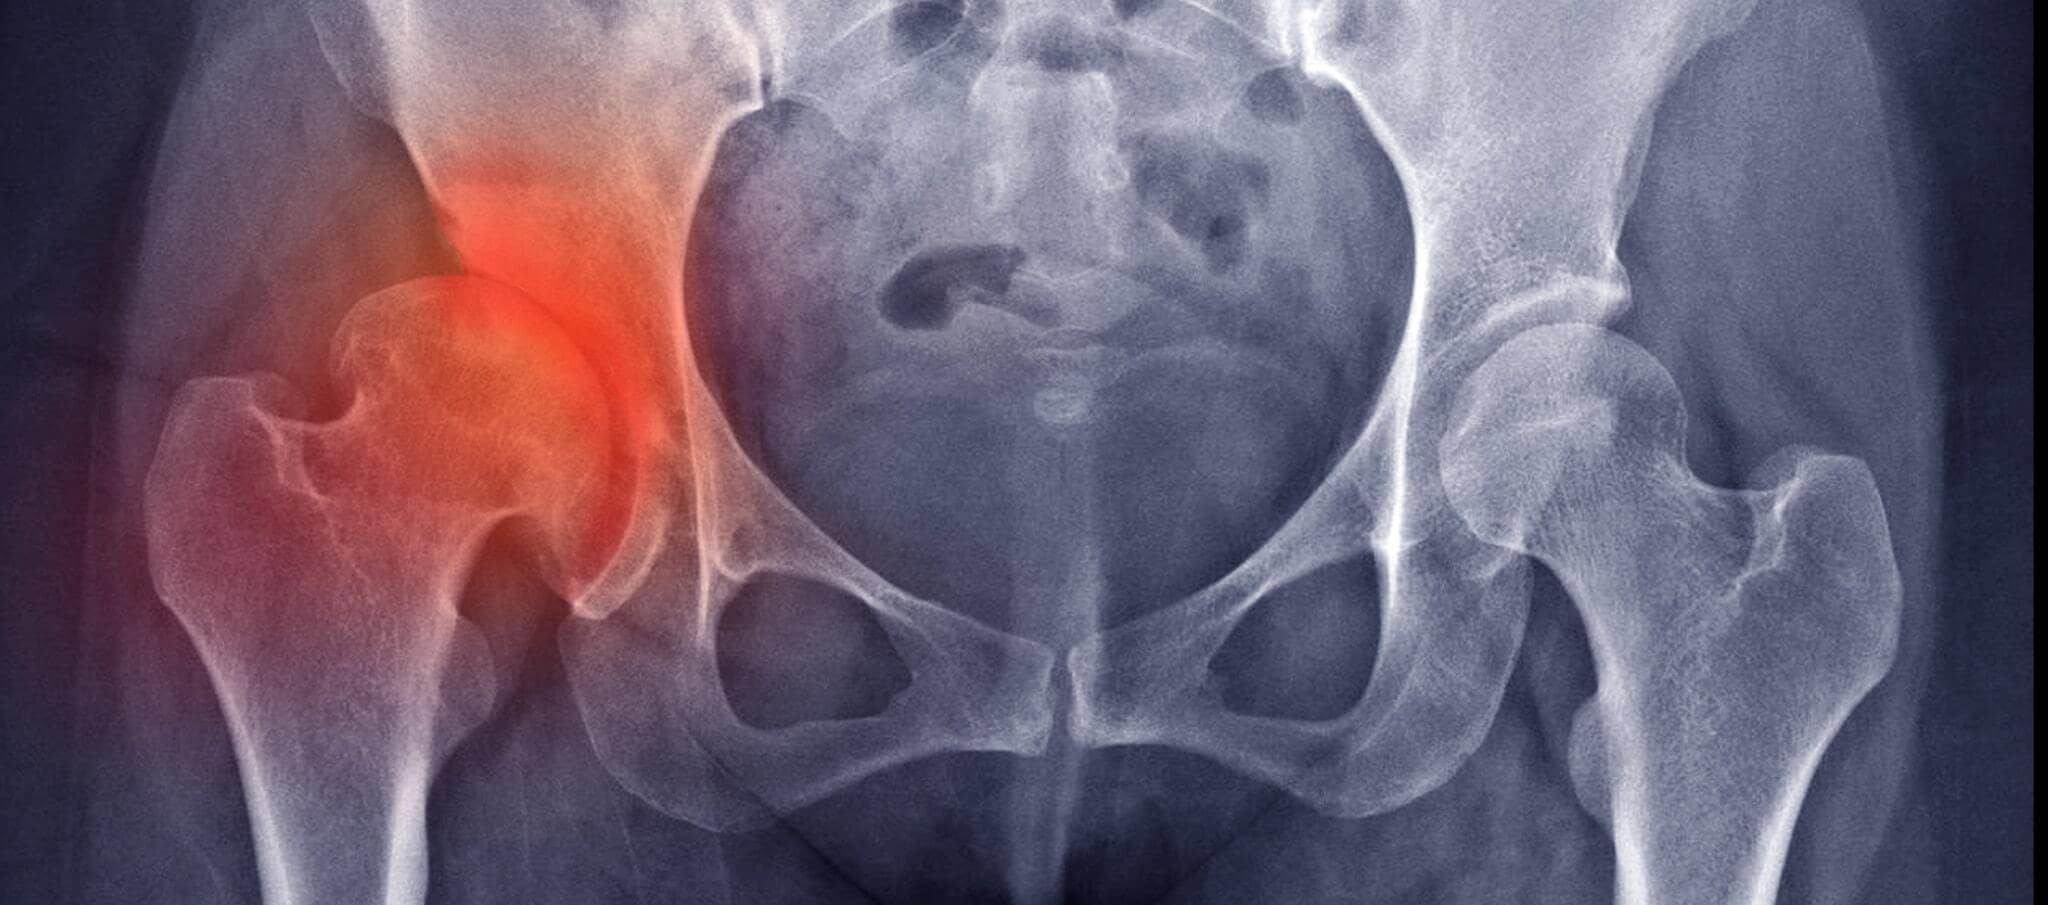 Comment soulager l'arthrose du genou ?, Dr Paillard